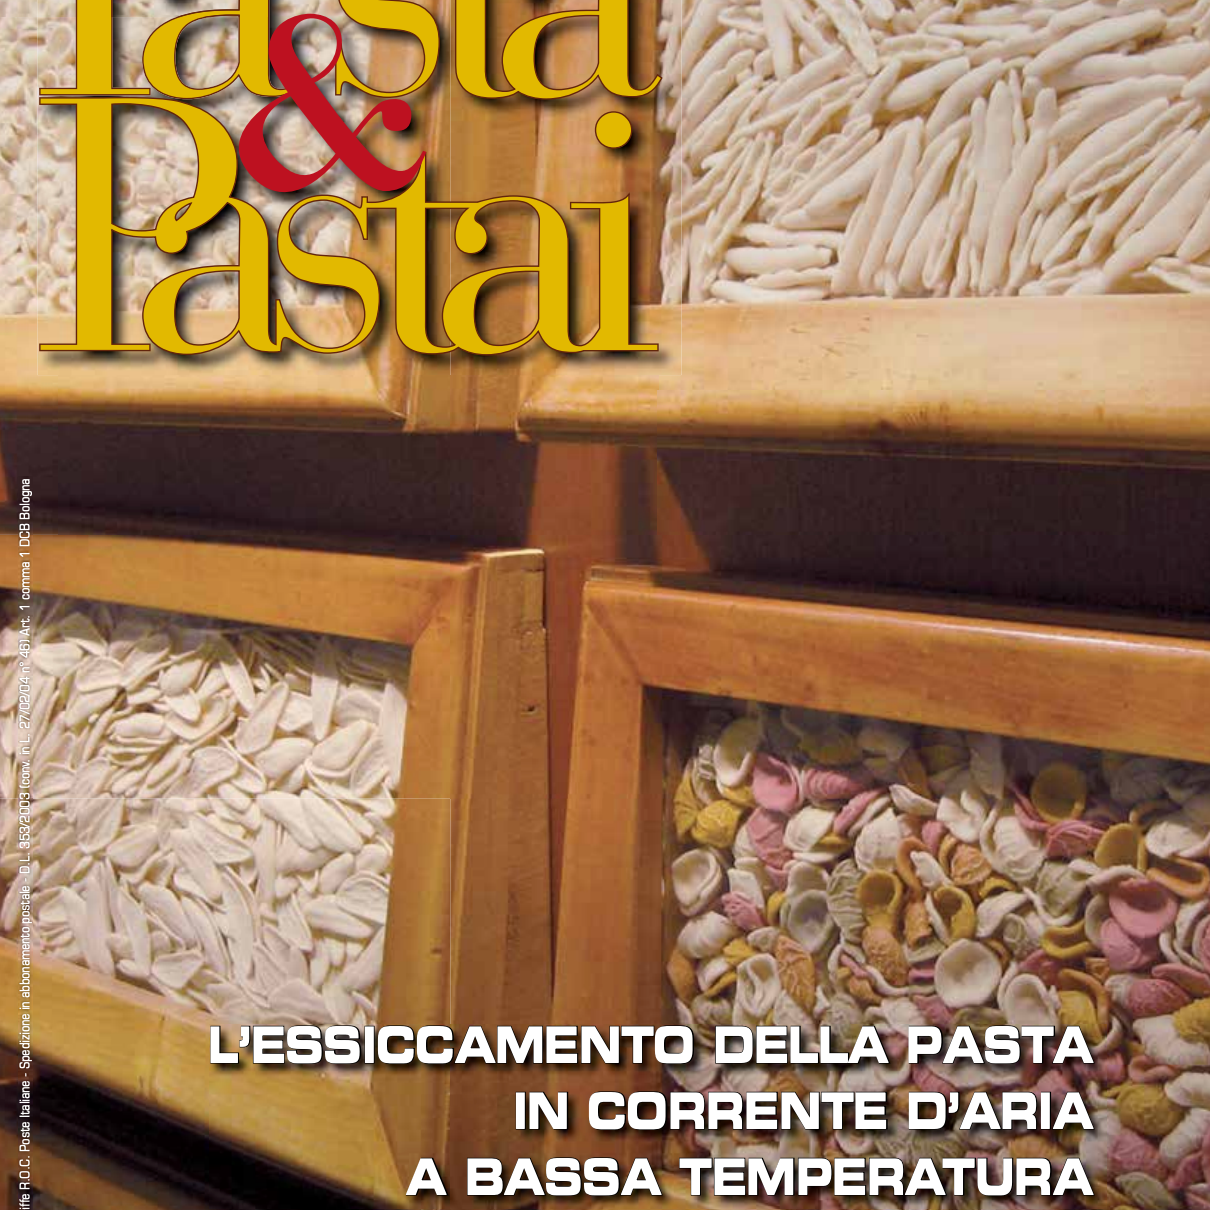 Il pastificio Fabbri sulla rivista Pasta&Pastai: il pastificio che lavora sotto i 38 gradi